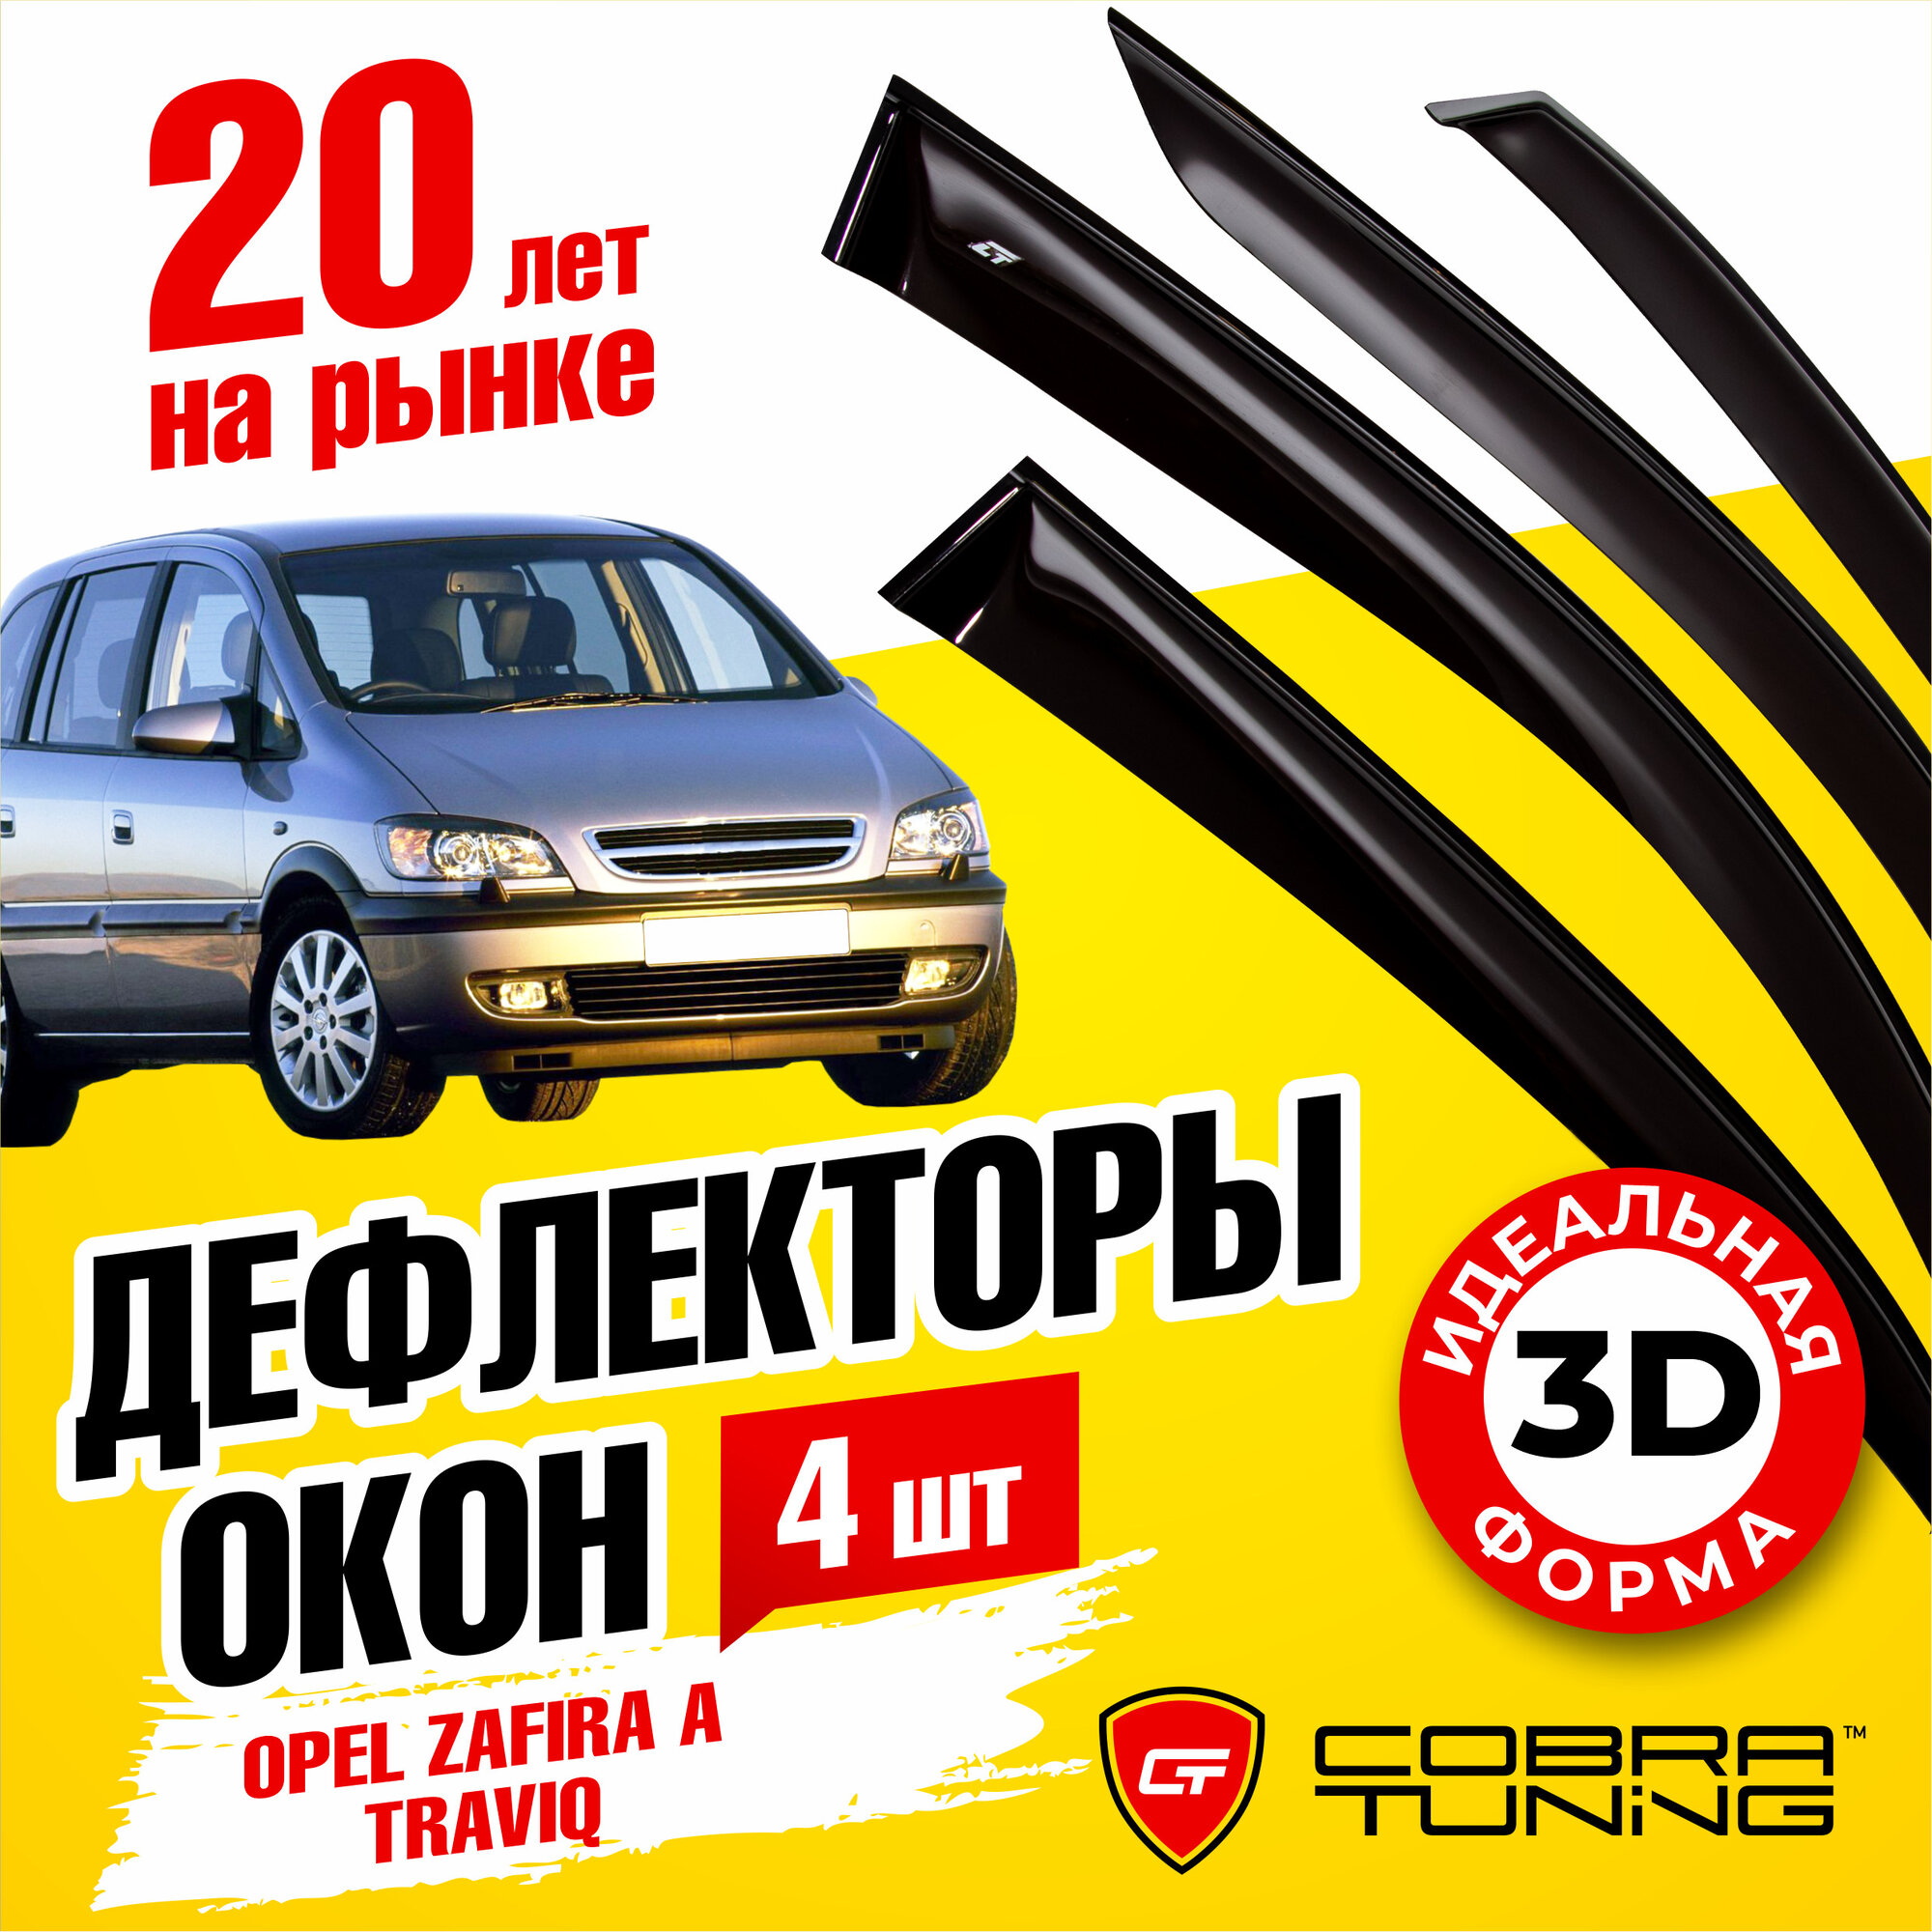 Дефлекторы боковых окон для Opel Zafira A (Опель Зафира) 2000-2005, Subaru Traviq (Субару Травик) 2001-2004, ветровики на двери автомобиля, Cobra Tuning